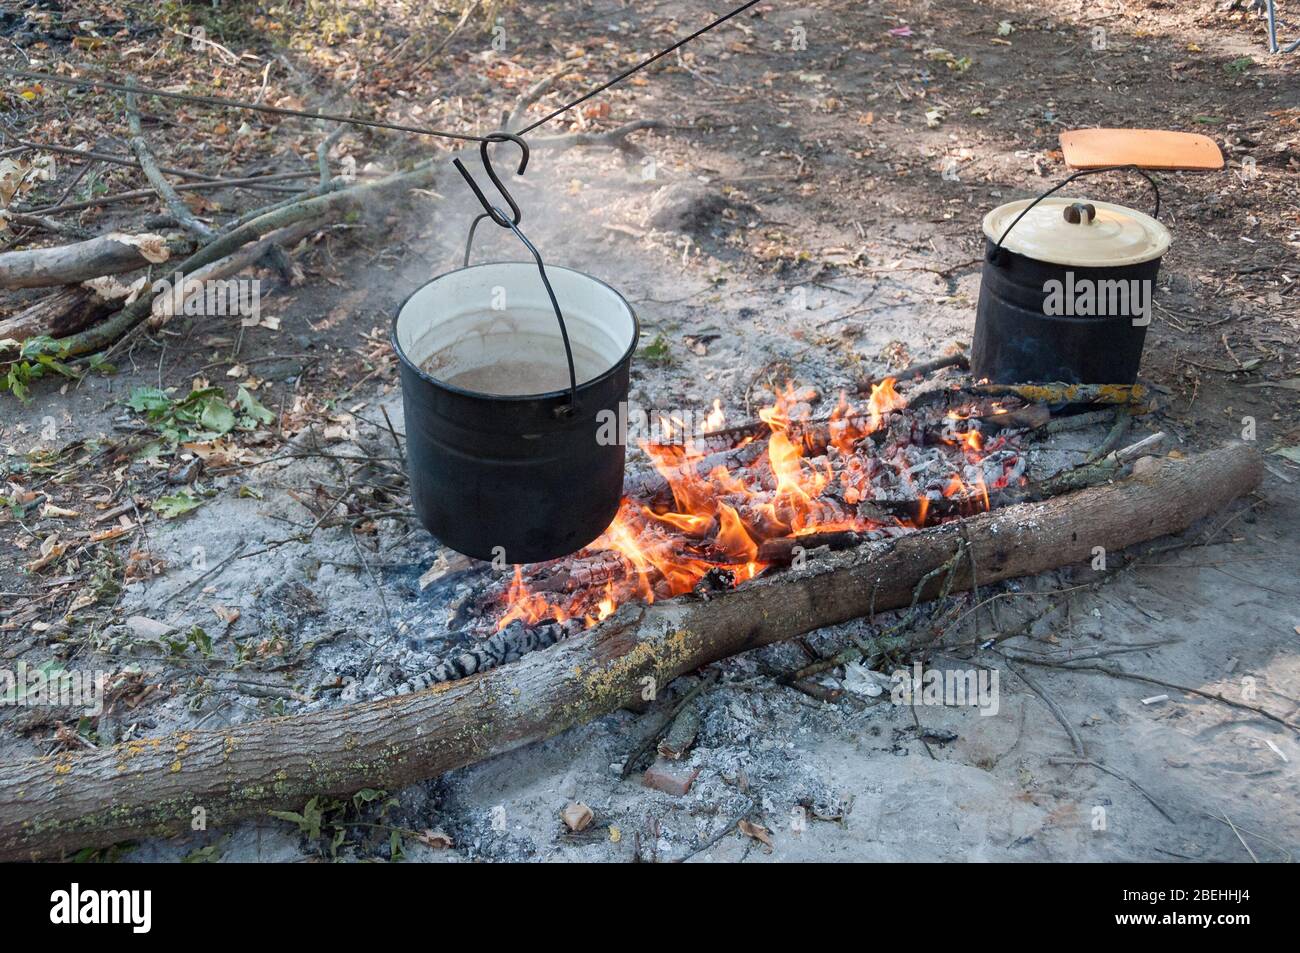 Rußiger Topf mit kochender Suppe, die über dem Lagerfeuer an einem Draht  hängt. Camping im Freien Kochen, Überleben in der Wildnis Stockfotografie -  Alamy